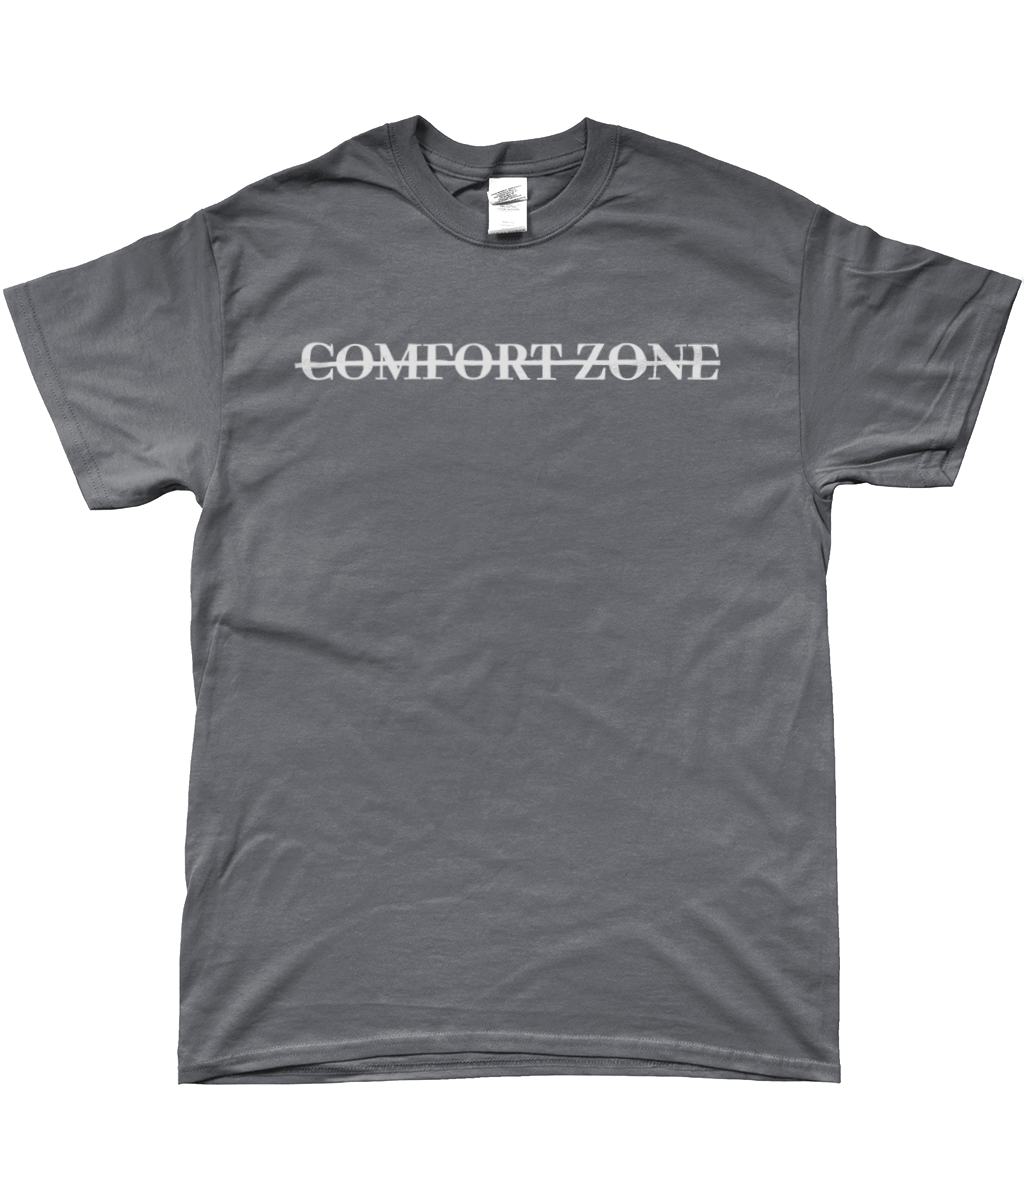 COMFORT ZONE T-SHIRT